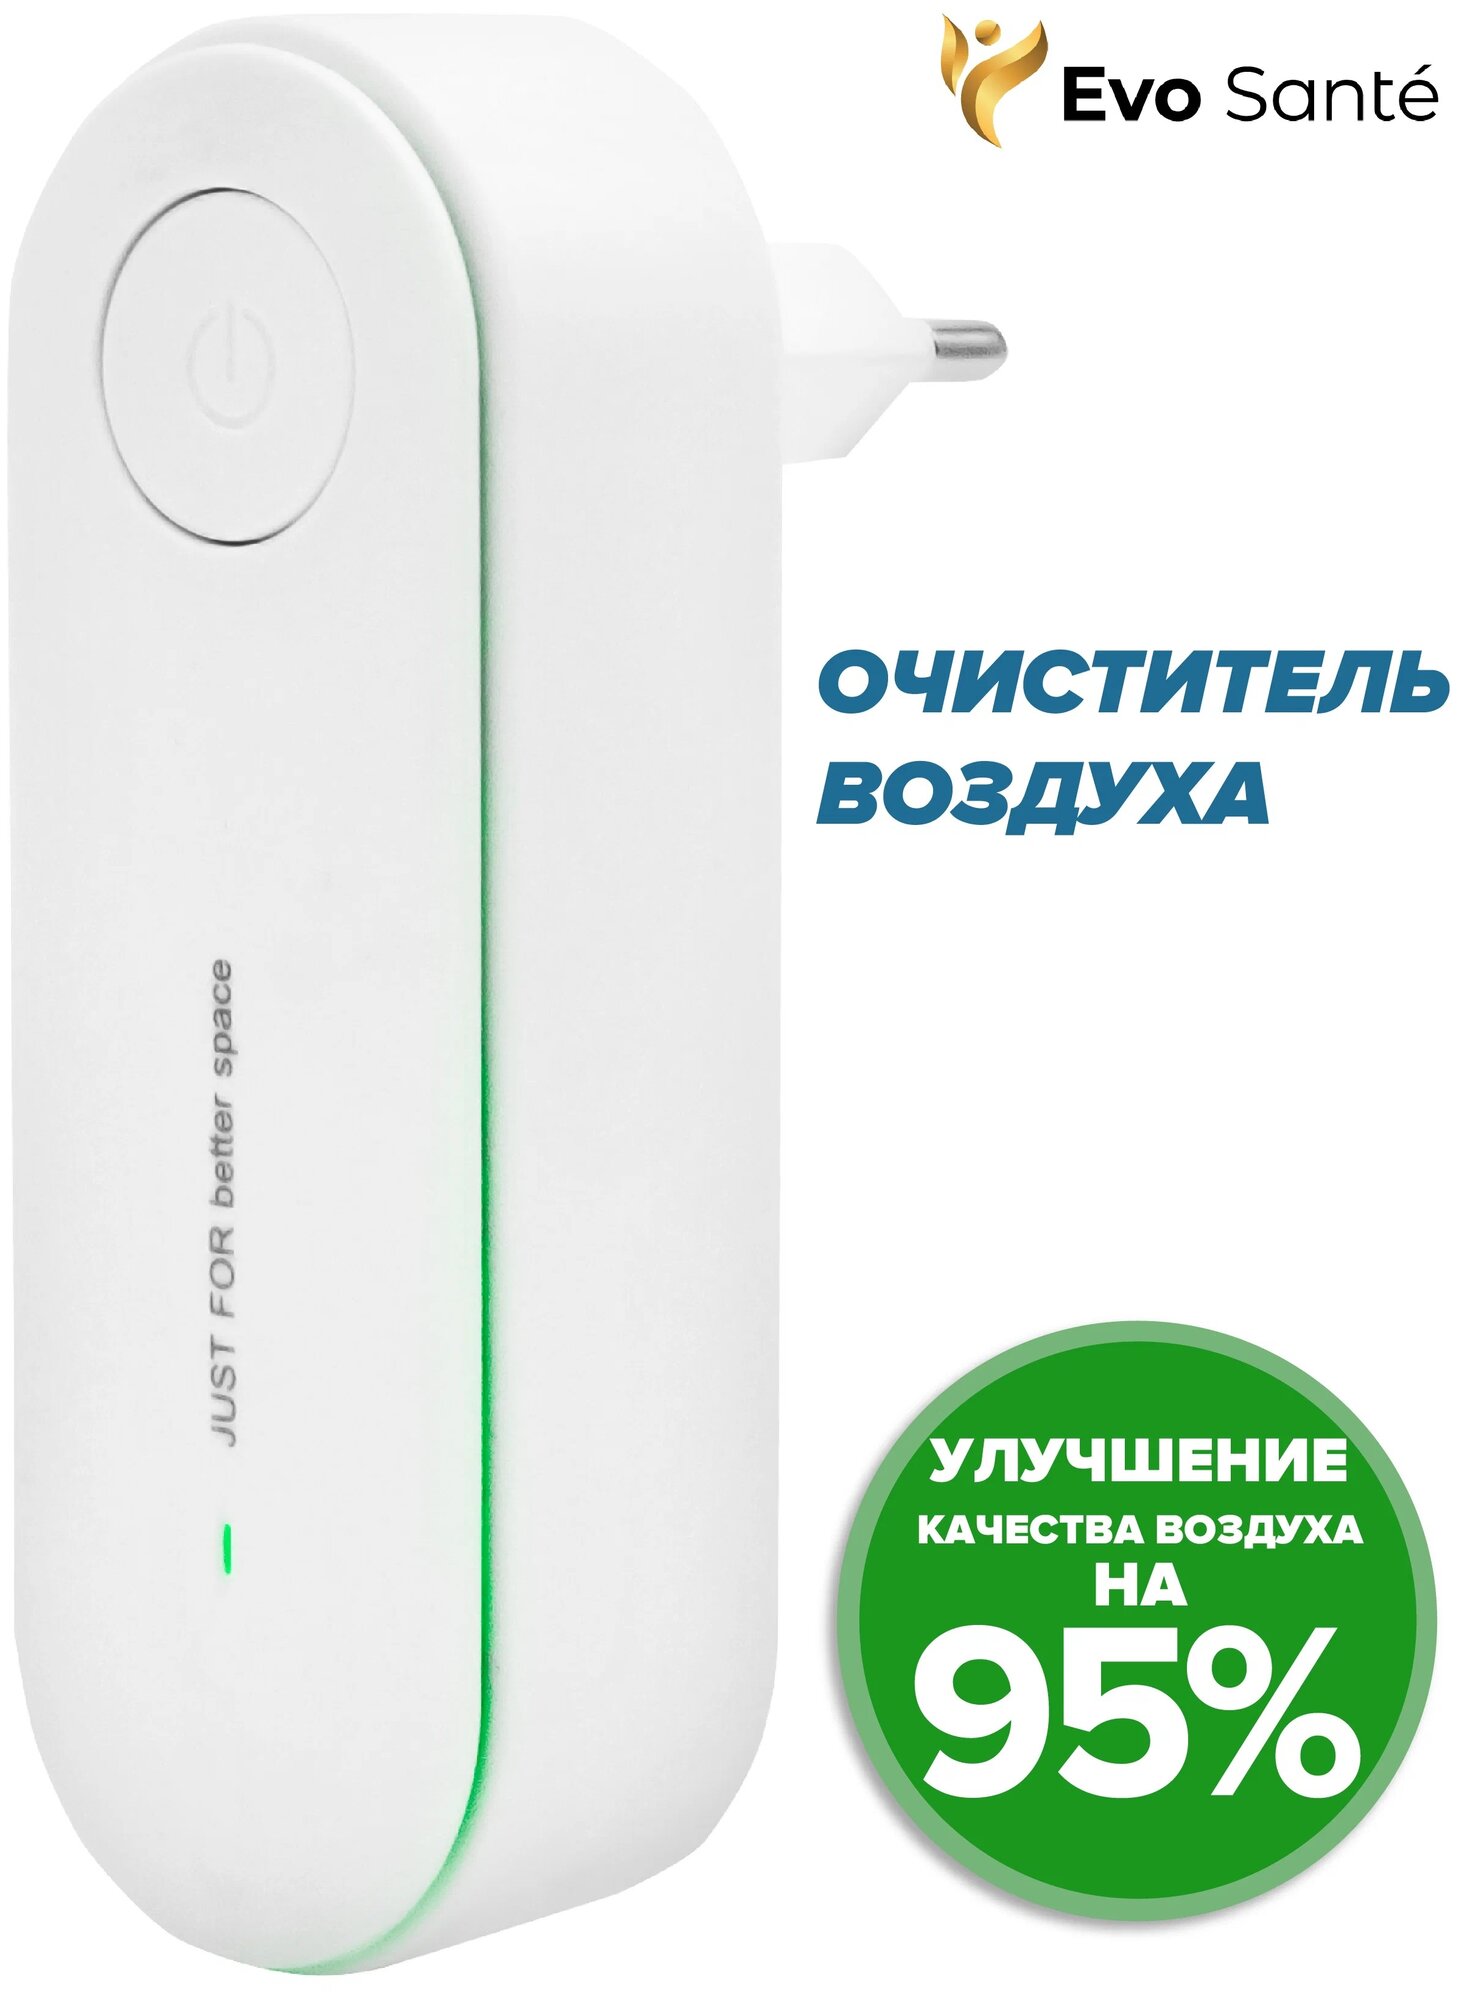 Очиститель воздуха Evo Santé с ионизацией биполярный ионизатор воздуха для дома для дезинфекции и устранения неприятного запаха белый